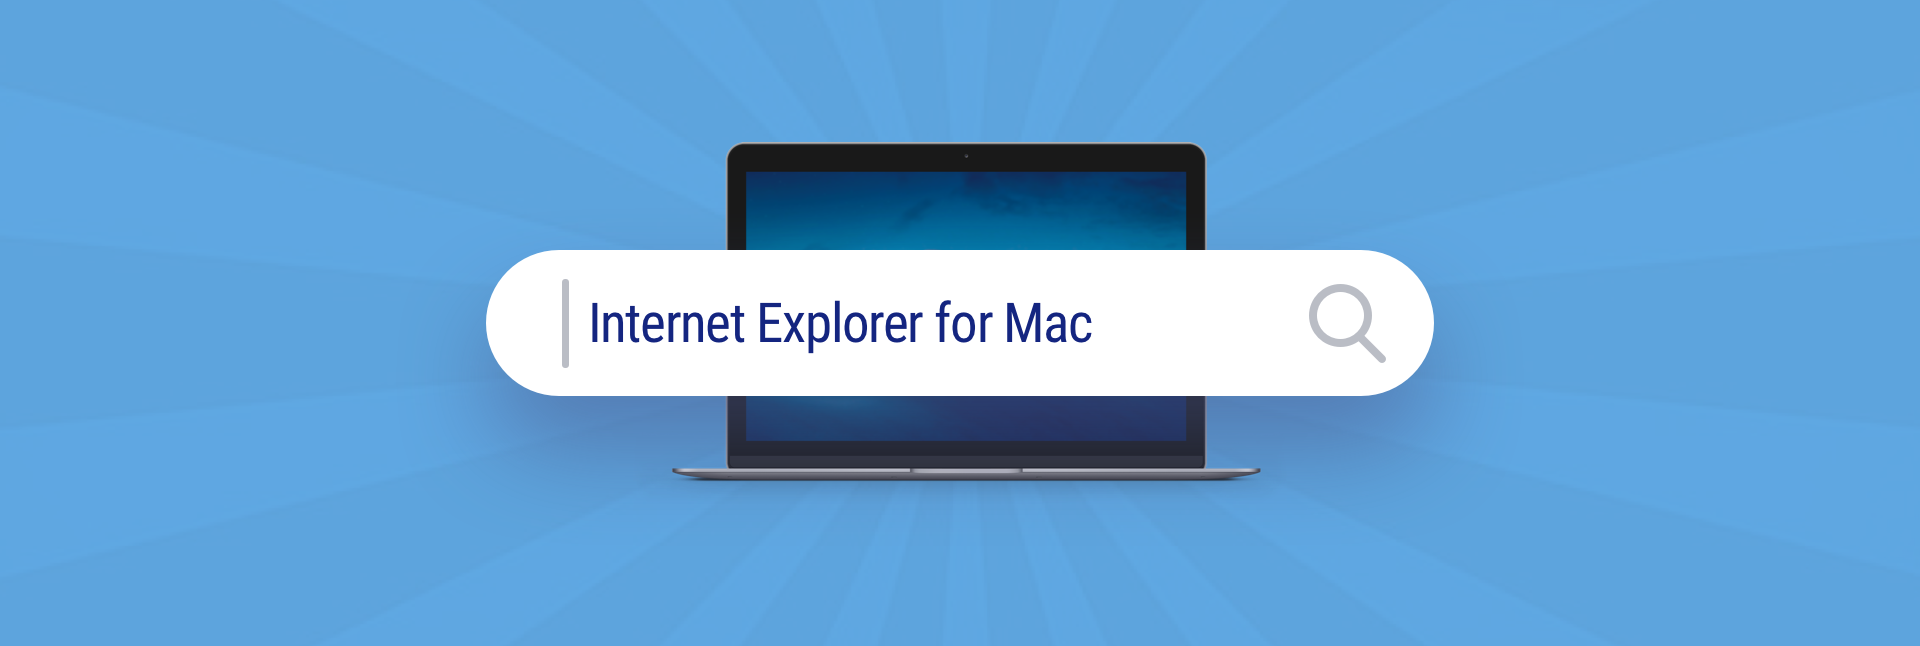 internet explorer for mac os 10